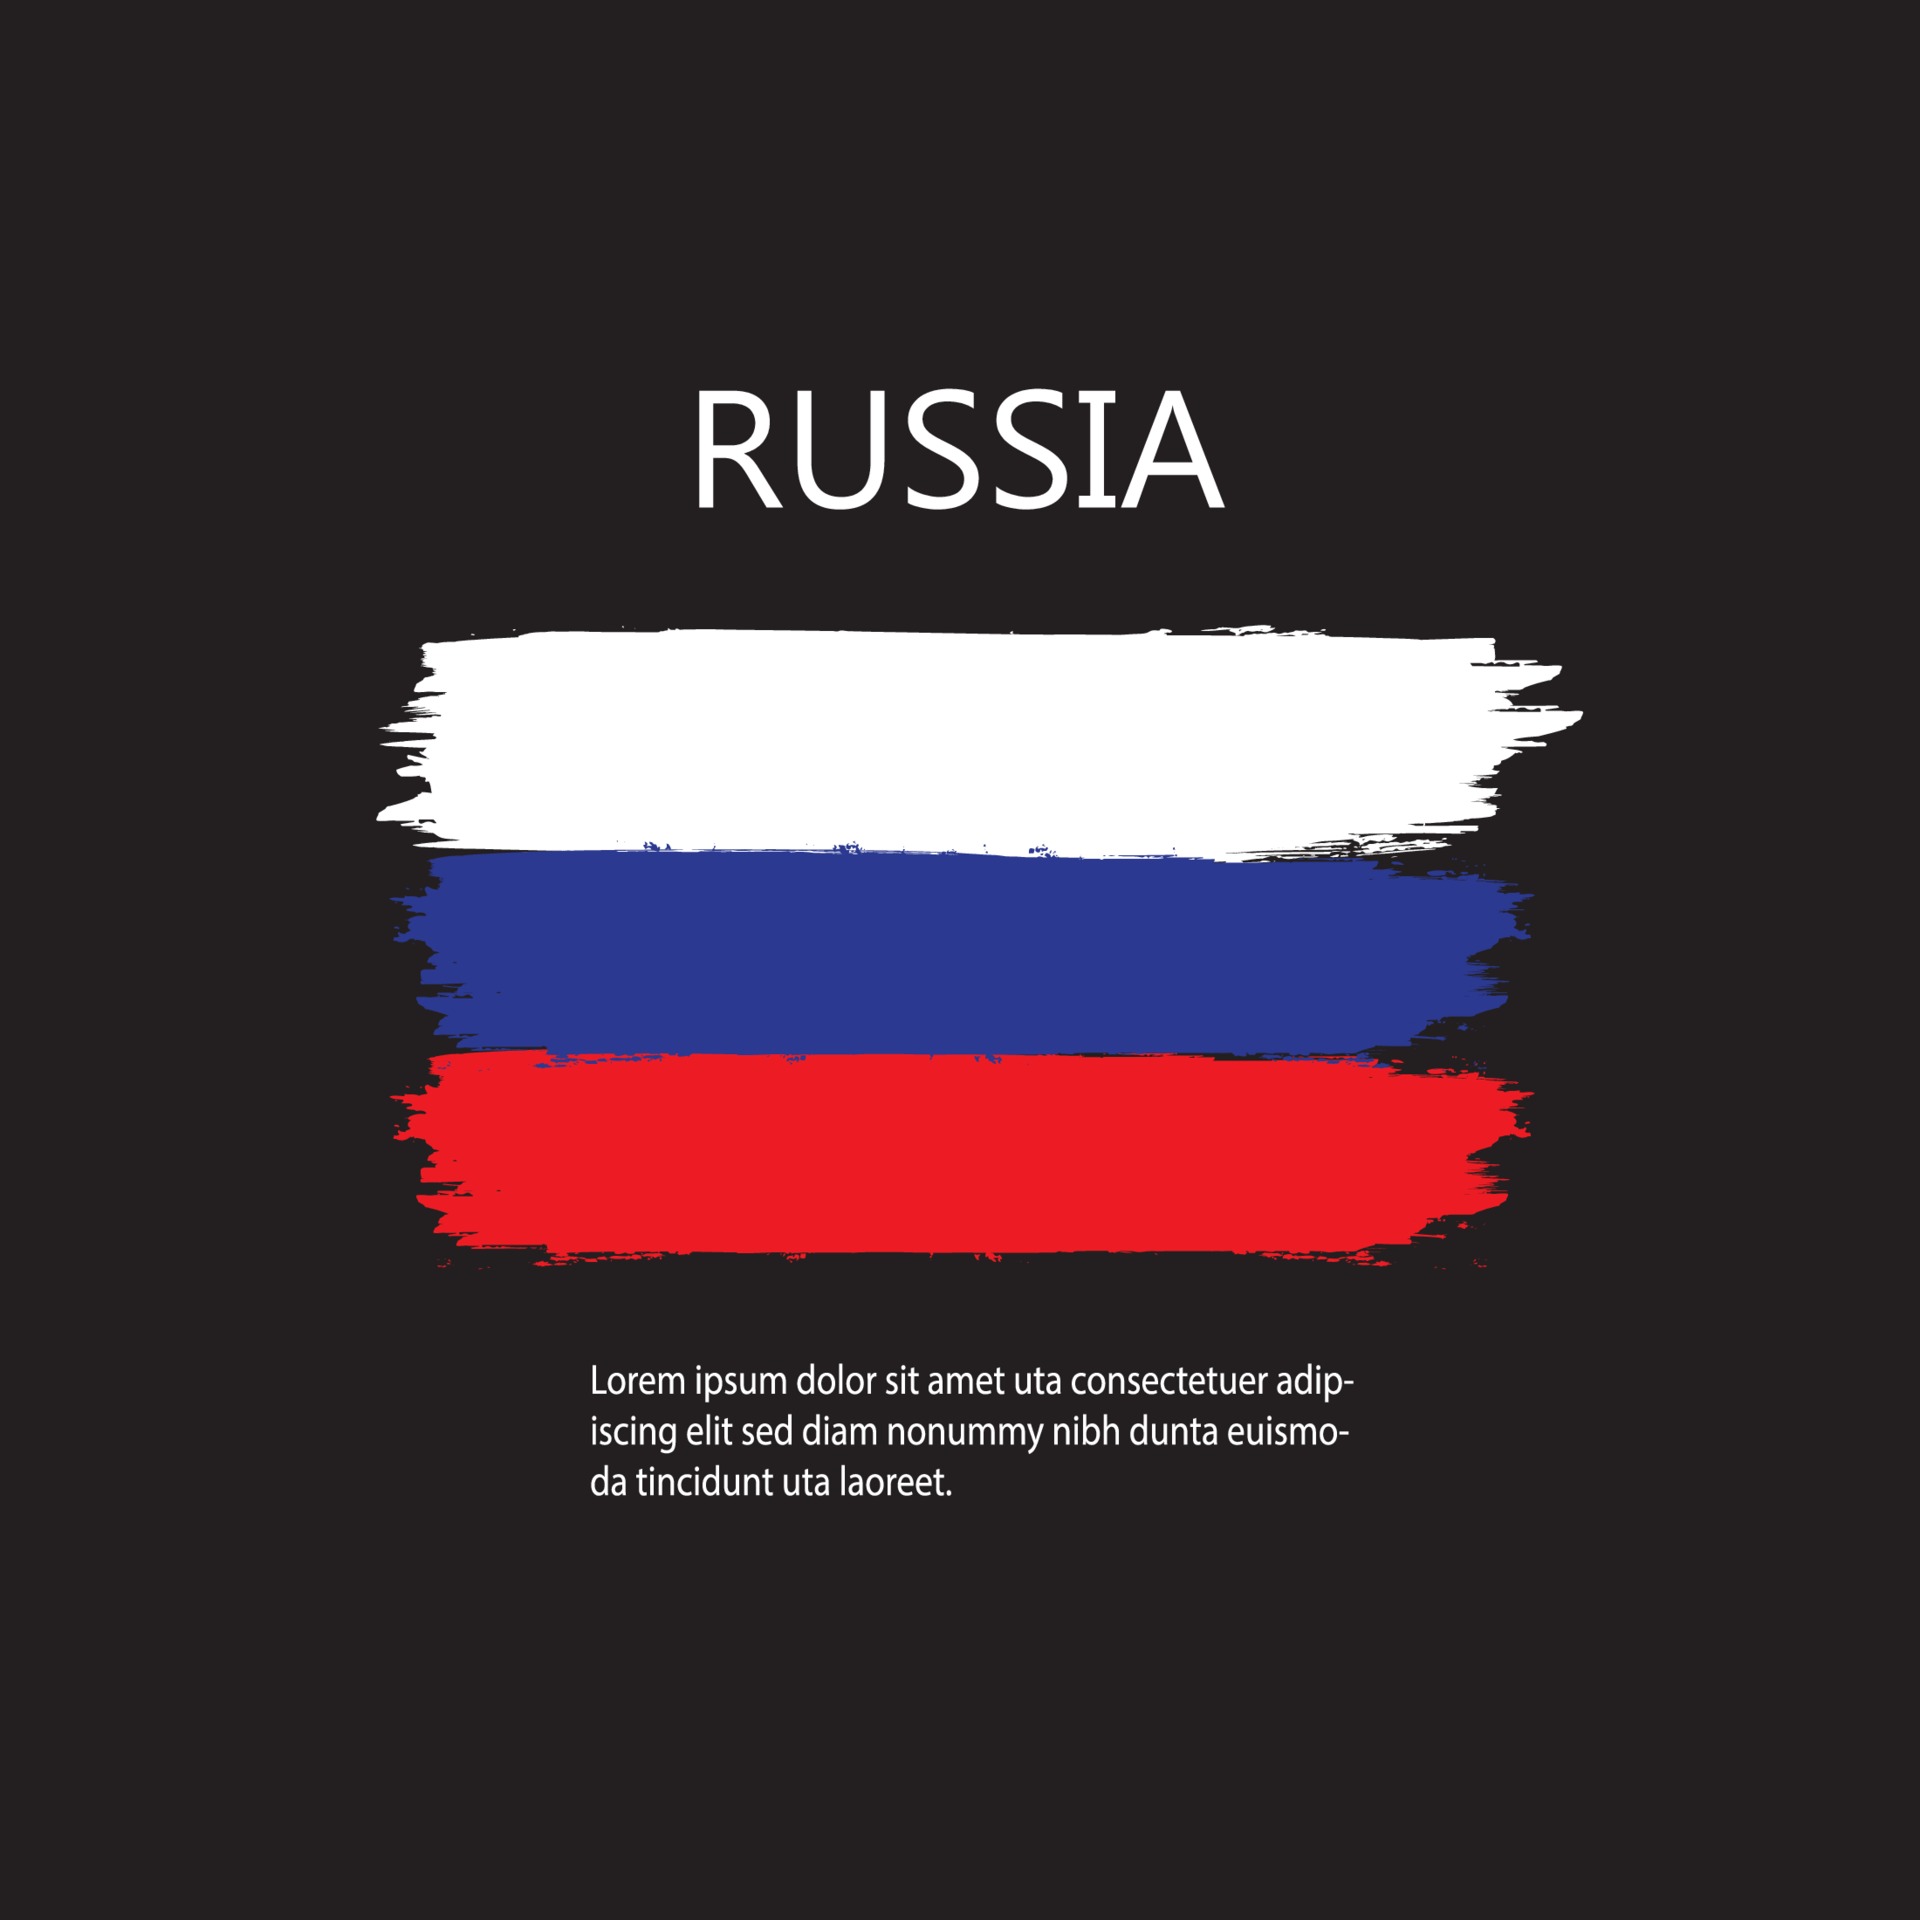 bandeira nacional da federação russa, ilustração vetorial pintada a pincel  10594554 Vetor no Vecteezy